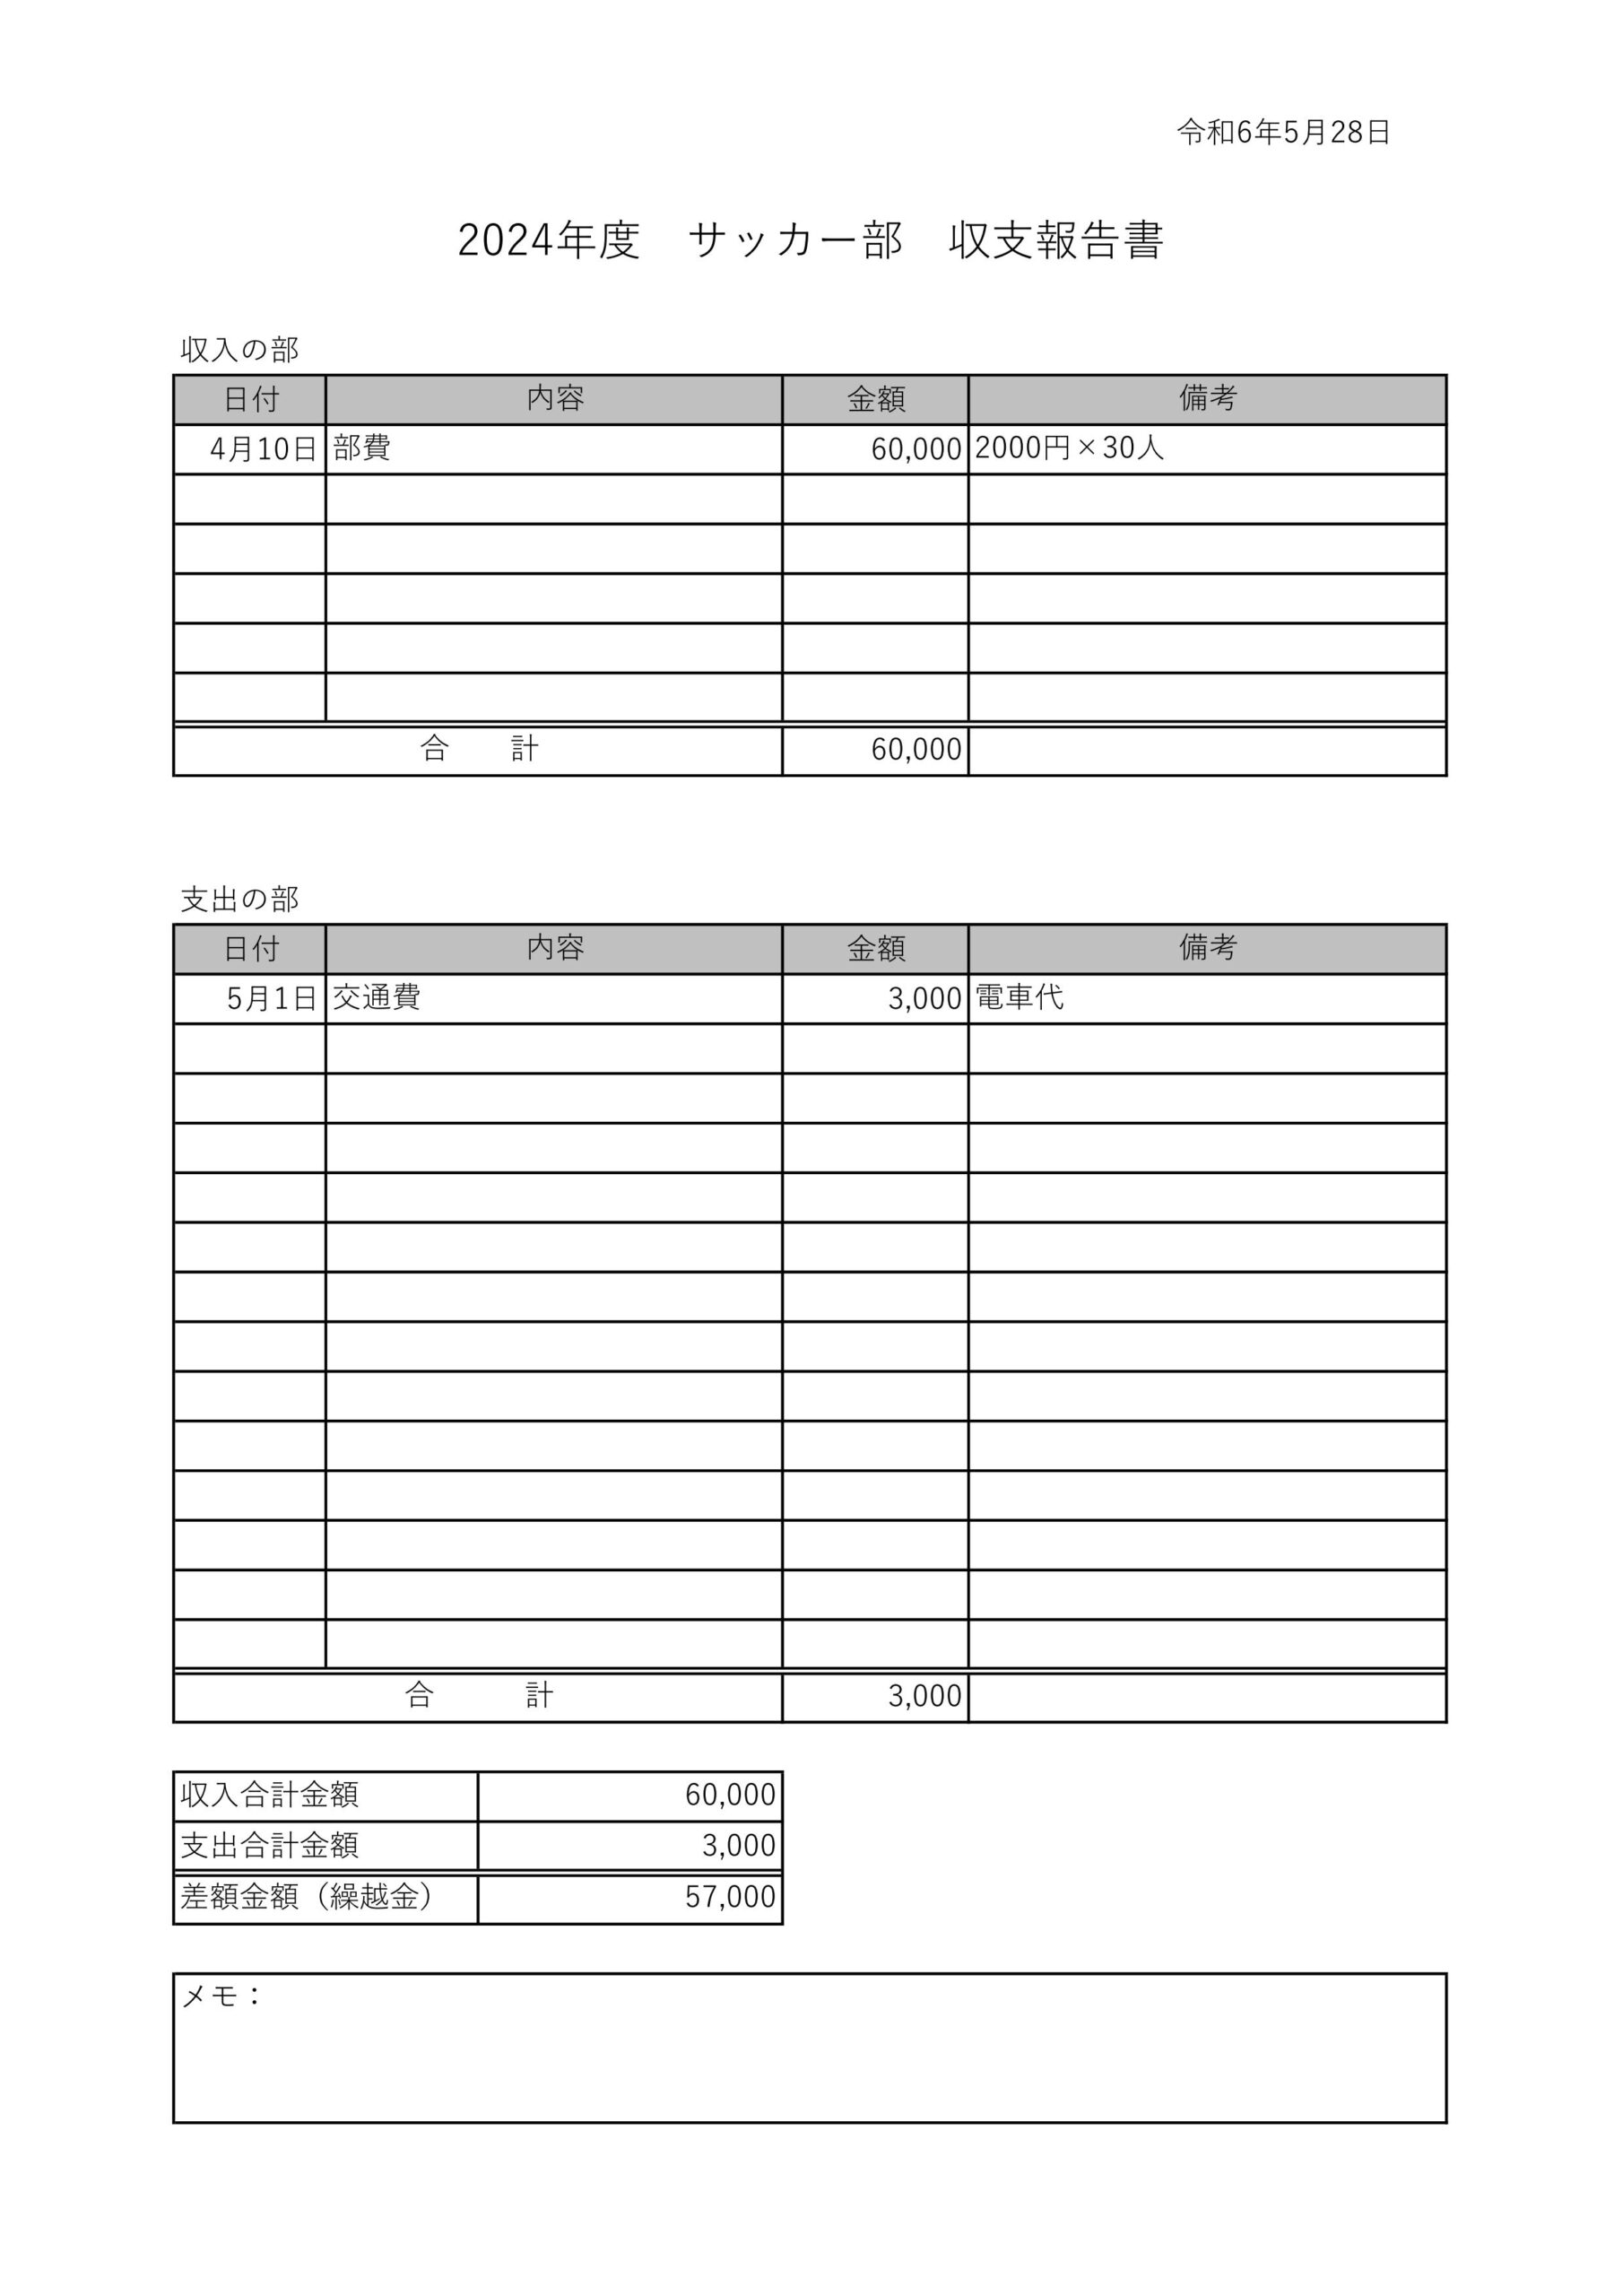 学校の部活動収支報告書テンプレート「Excelで自動計算」中学校と高校で使える使った部費や活動費などを管理を簡易的に行う事が可能な素材です。 ・Excel・Wo